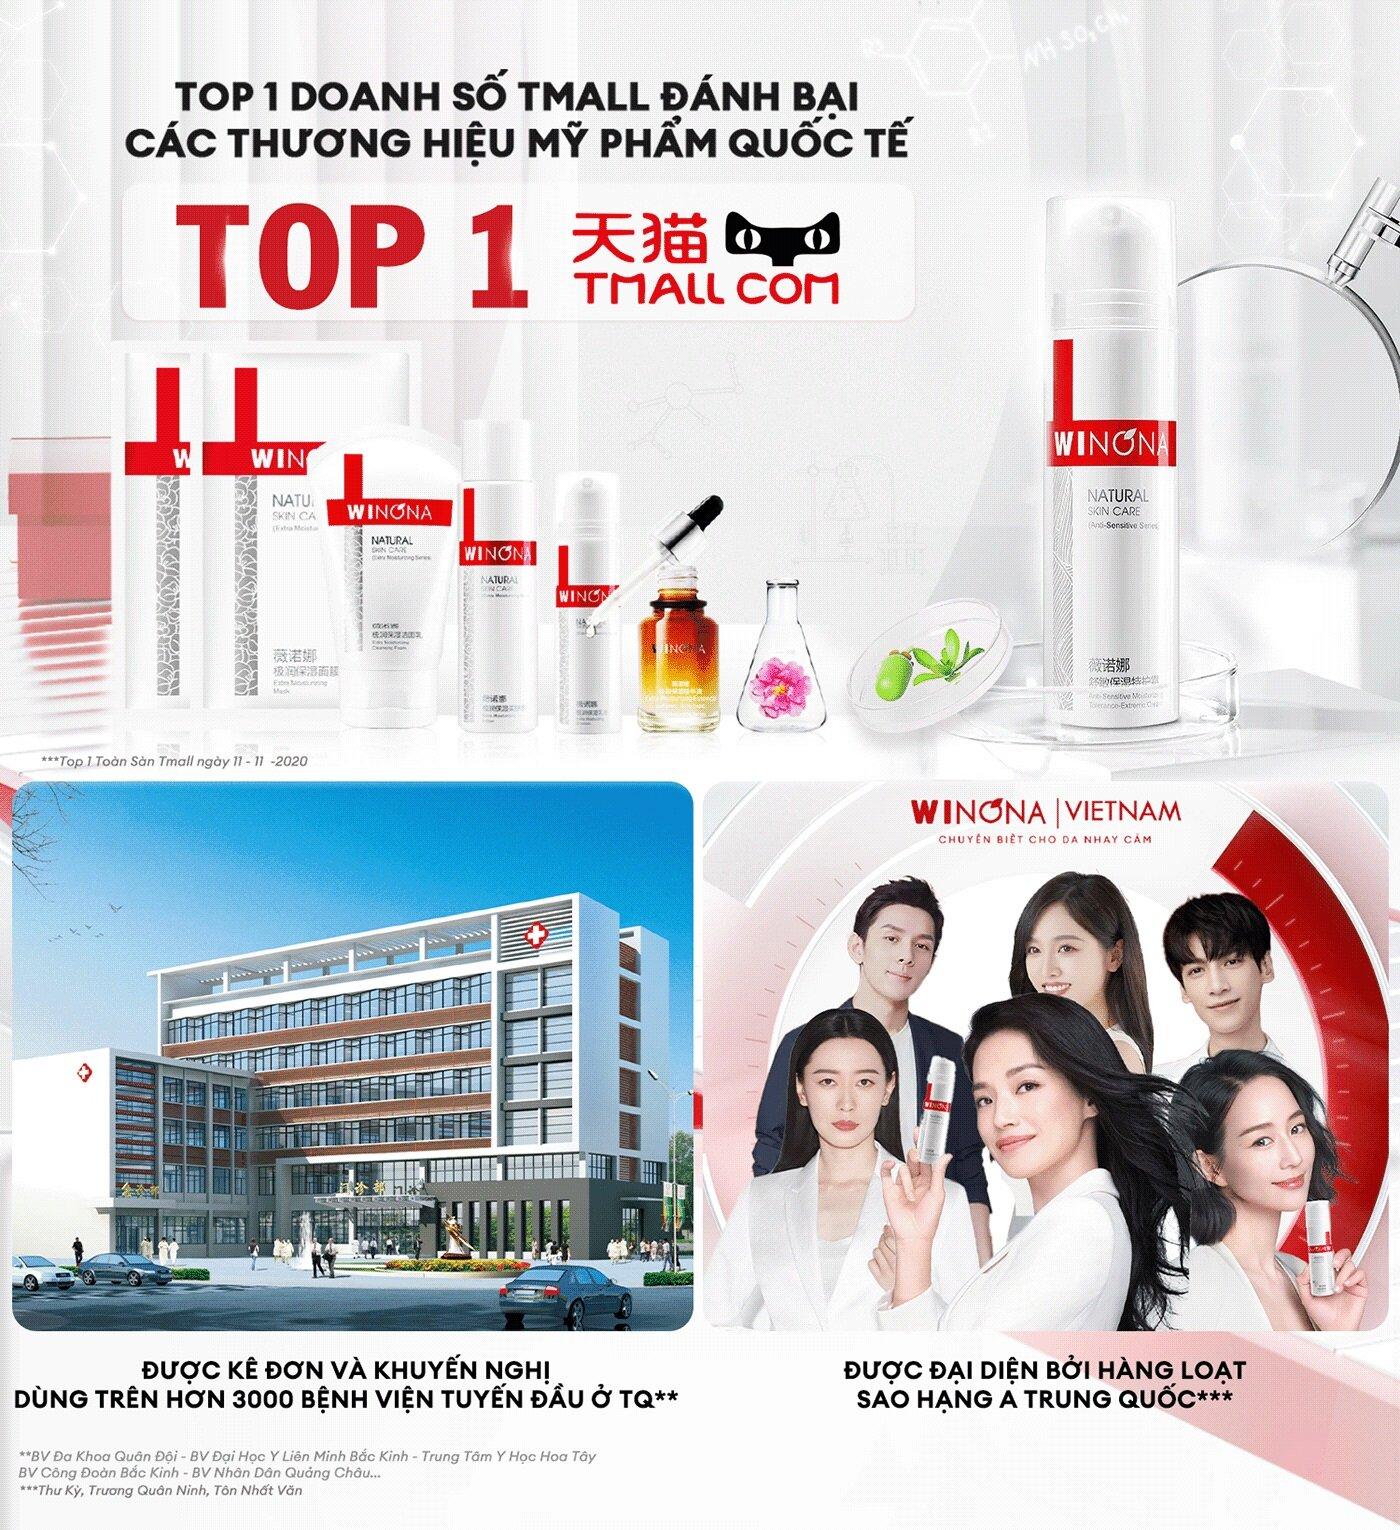 Top 10 thương hiệu chăm sóc da hàng đầu Trung Quốc theo Deloitte chăm sóc chăm sóc da Chando estee lauder HFP LOréal lancôme Pechoin Shiseido SK-II thương hiệu thương hiệu chăm sóc da hàng đầu Trung Quốc thương hiệu mỹ phẩm tốt nhất Trung Quốc Top 10 Trung Quốc Winona Zhiben